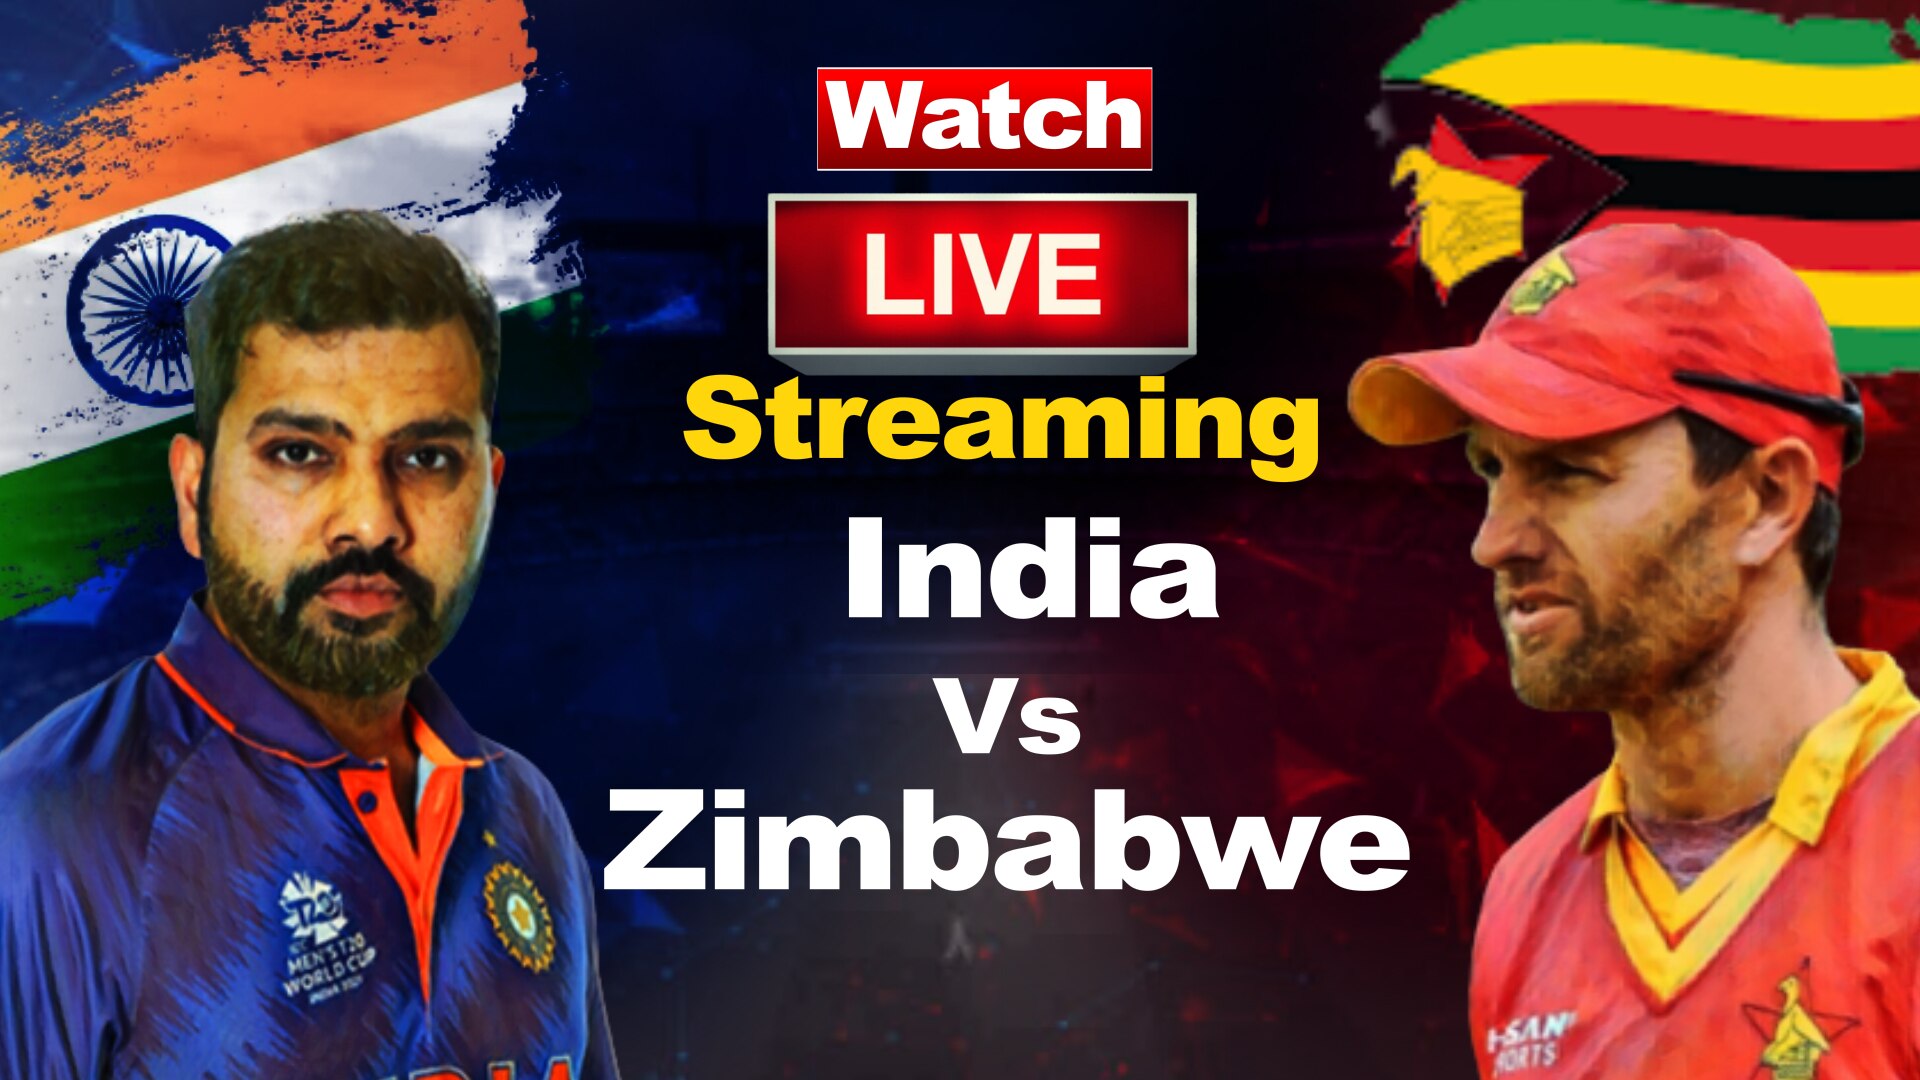 IND vs ZIM Live Streaming: बिना पैसा खर्च किये देखें भारत-जिम्बाब्वे का मैच, जानें हर पल की अपडेट